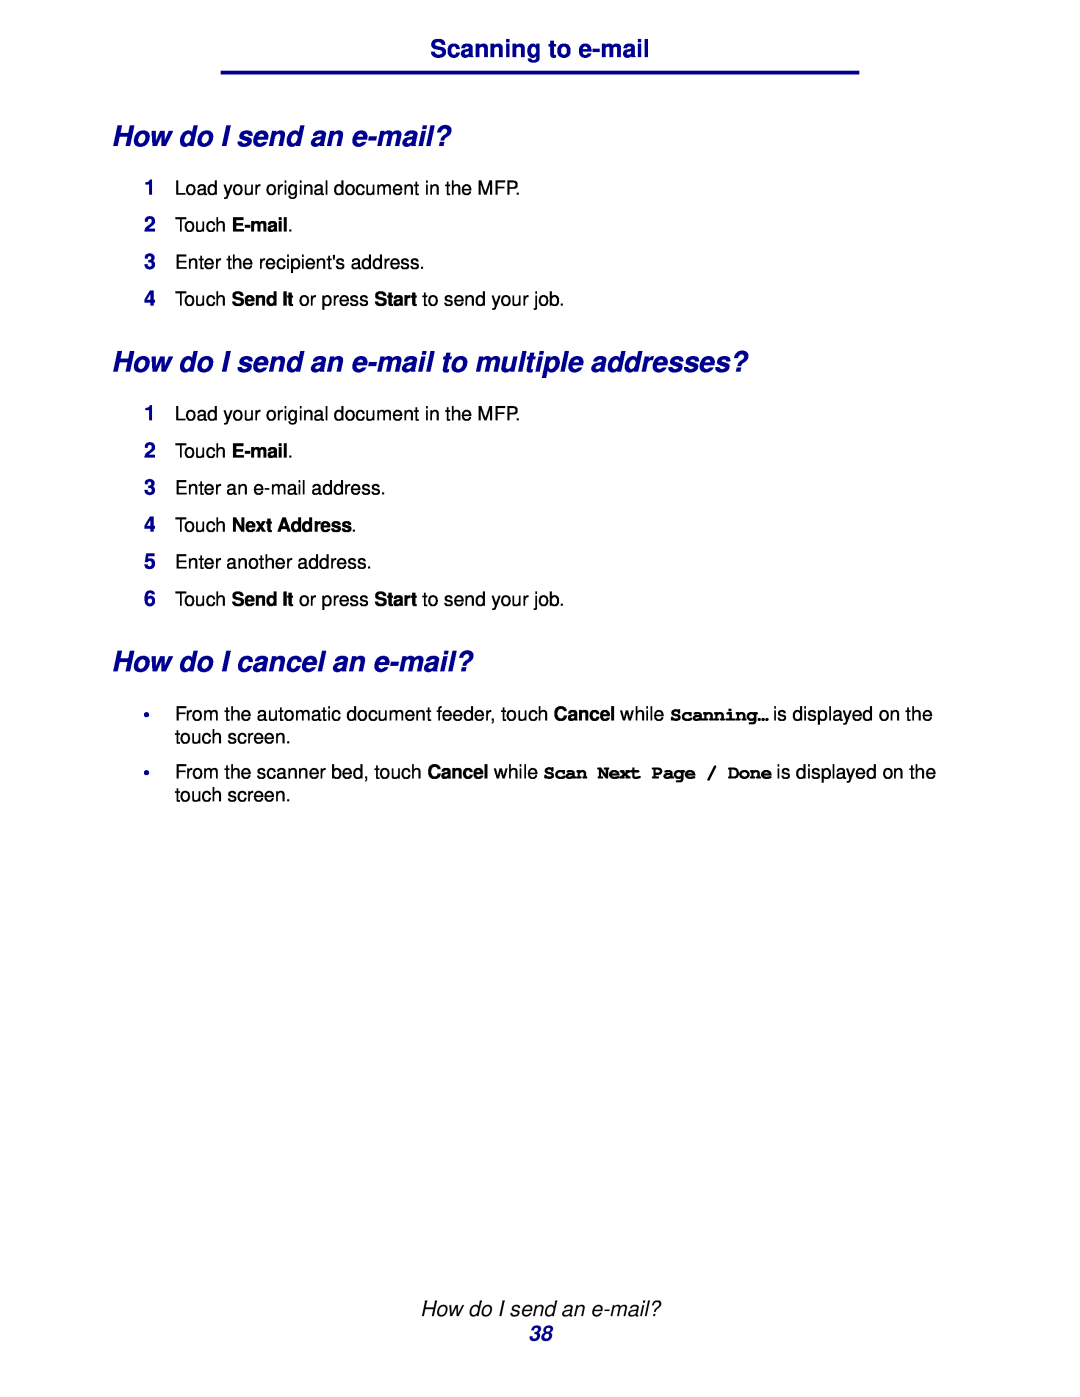 IBM MFP 35, MFP 30 How do I send an e-mail?, How do I send an e-mail to multiple addresses?, How do I cancel an e-mail? 